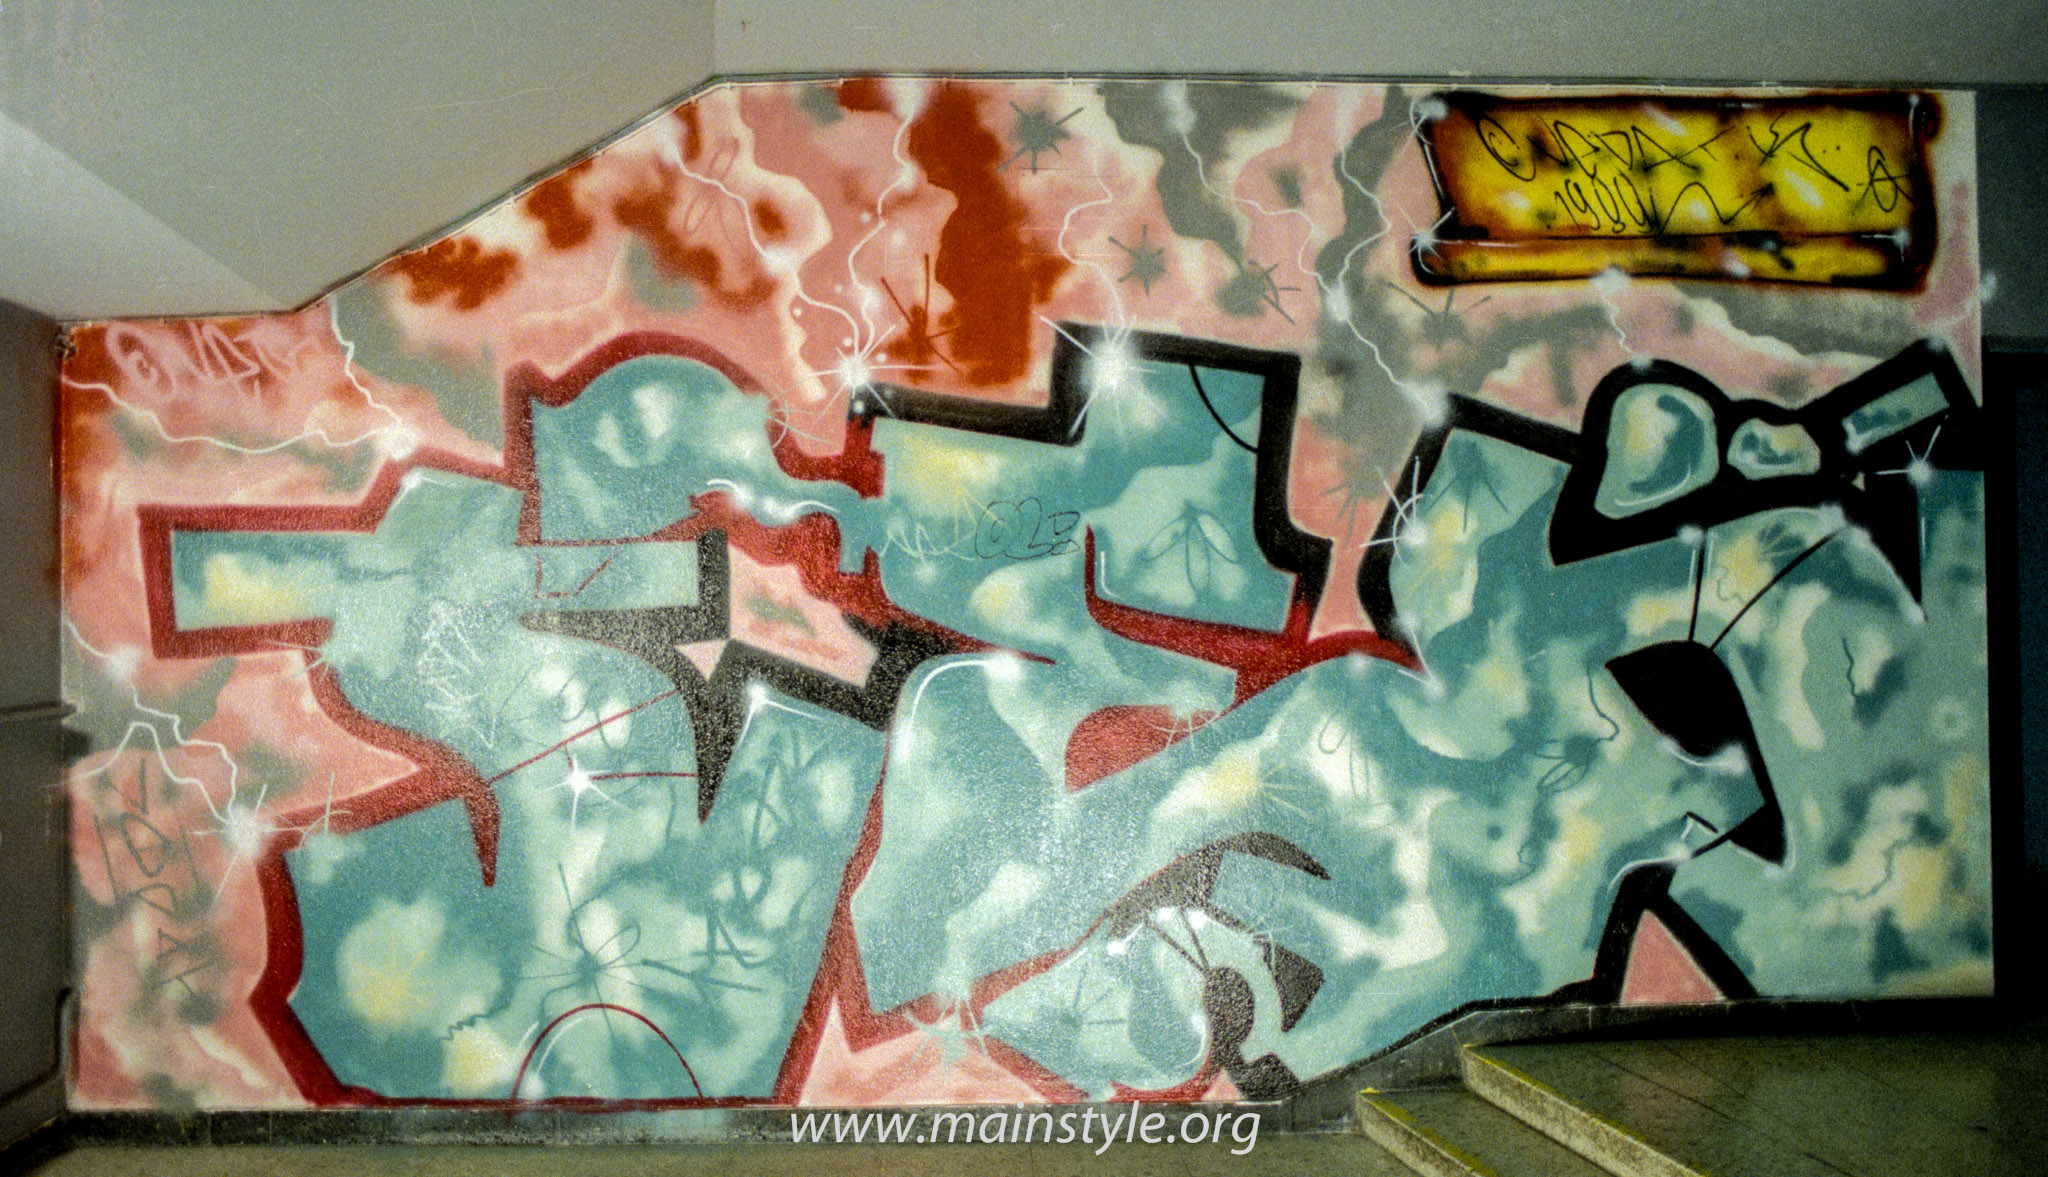 Graffiti_Frankfurt_JUZ Gallus 1989 (1 von 3)